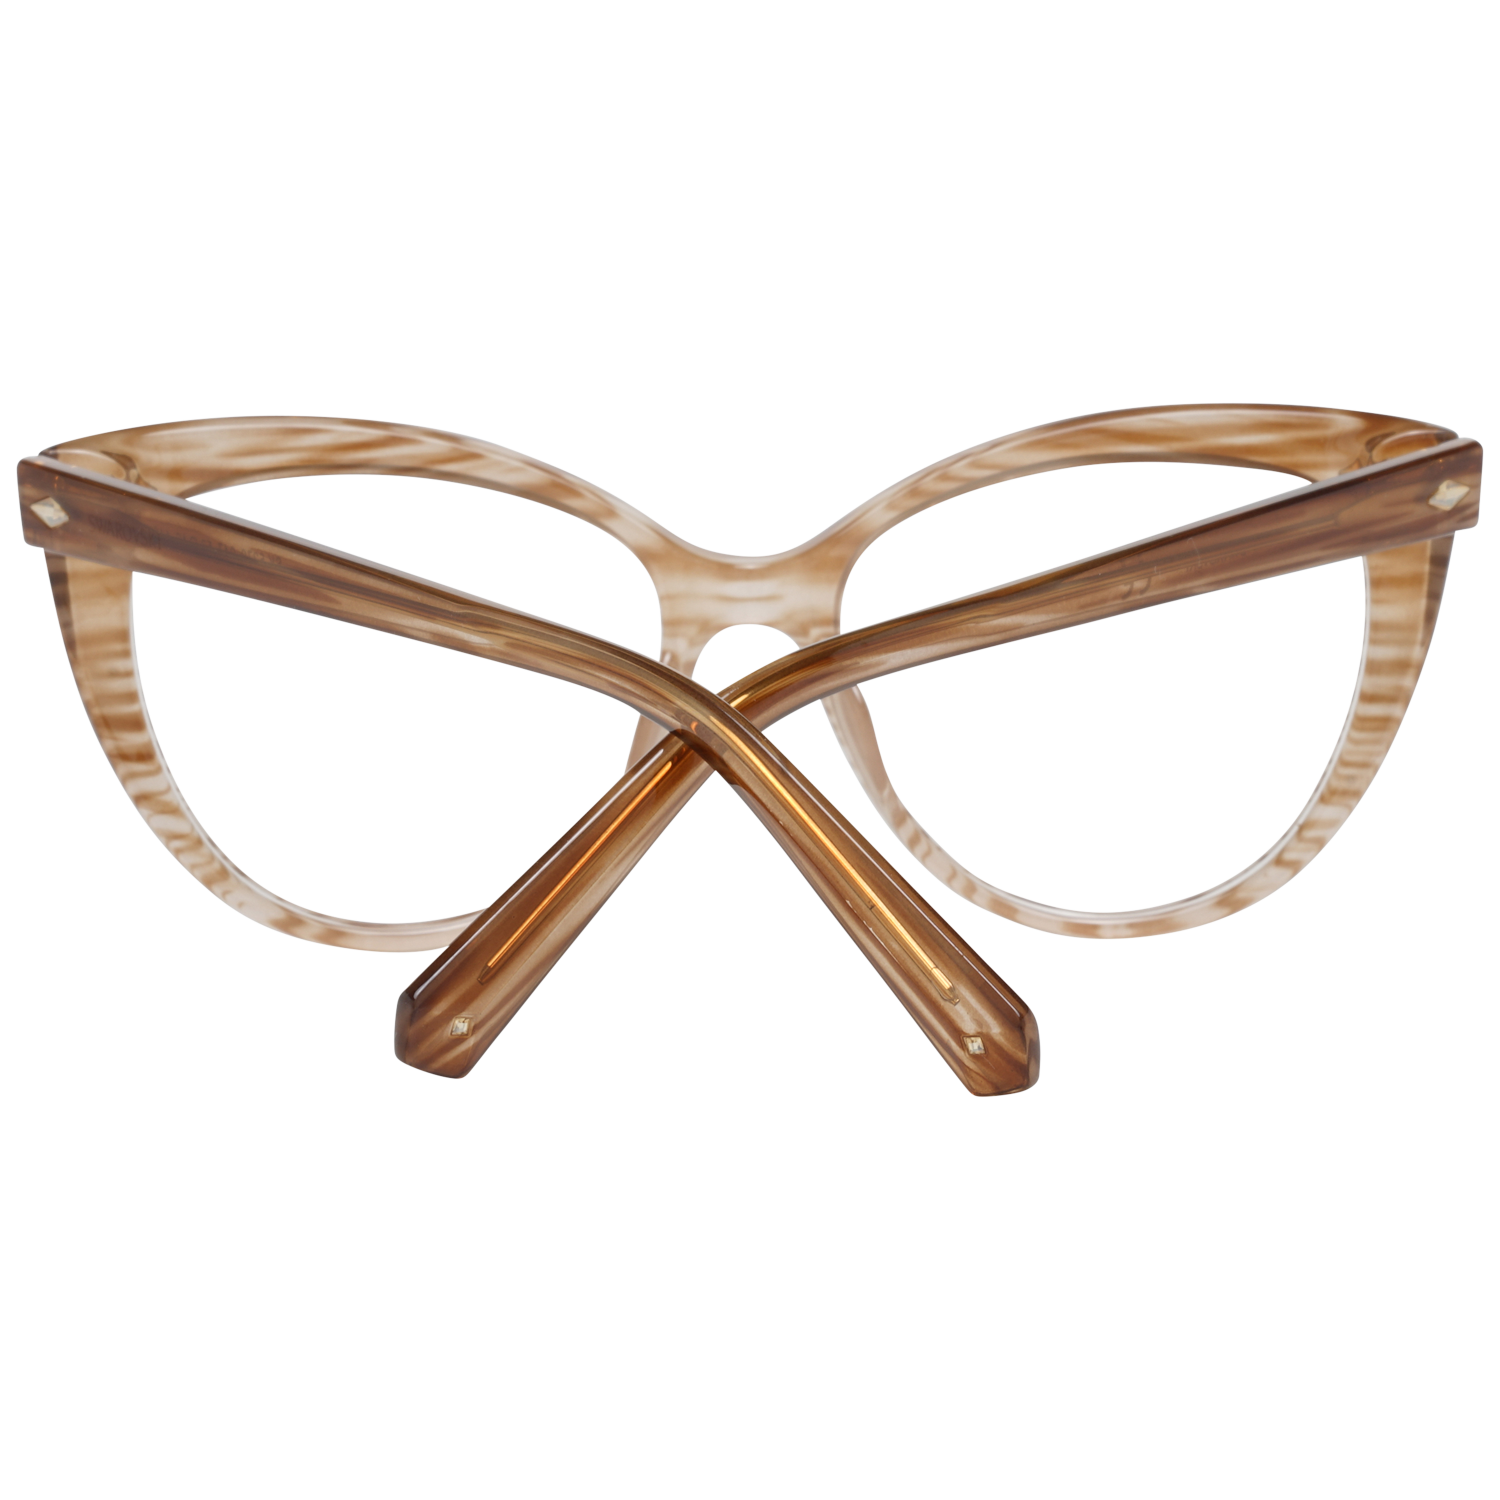 Swarovski Frames Swarovski Women Glasses Optical Frame SK5270 047 53 Eyeglasses Eyewear UK USA Australia 